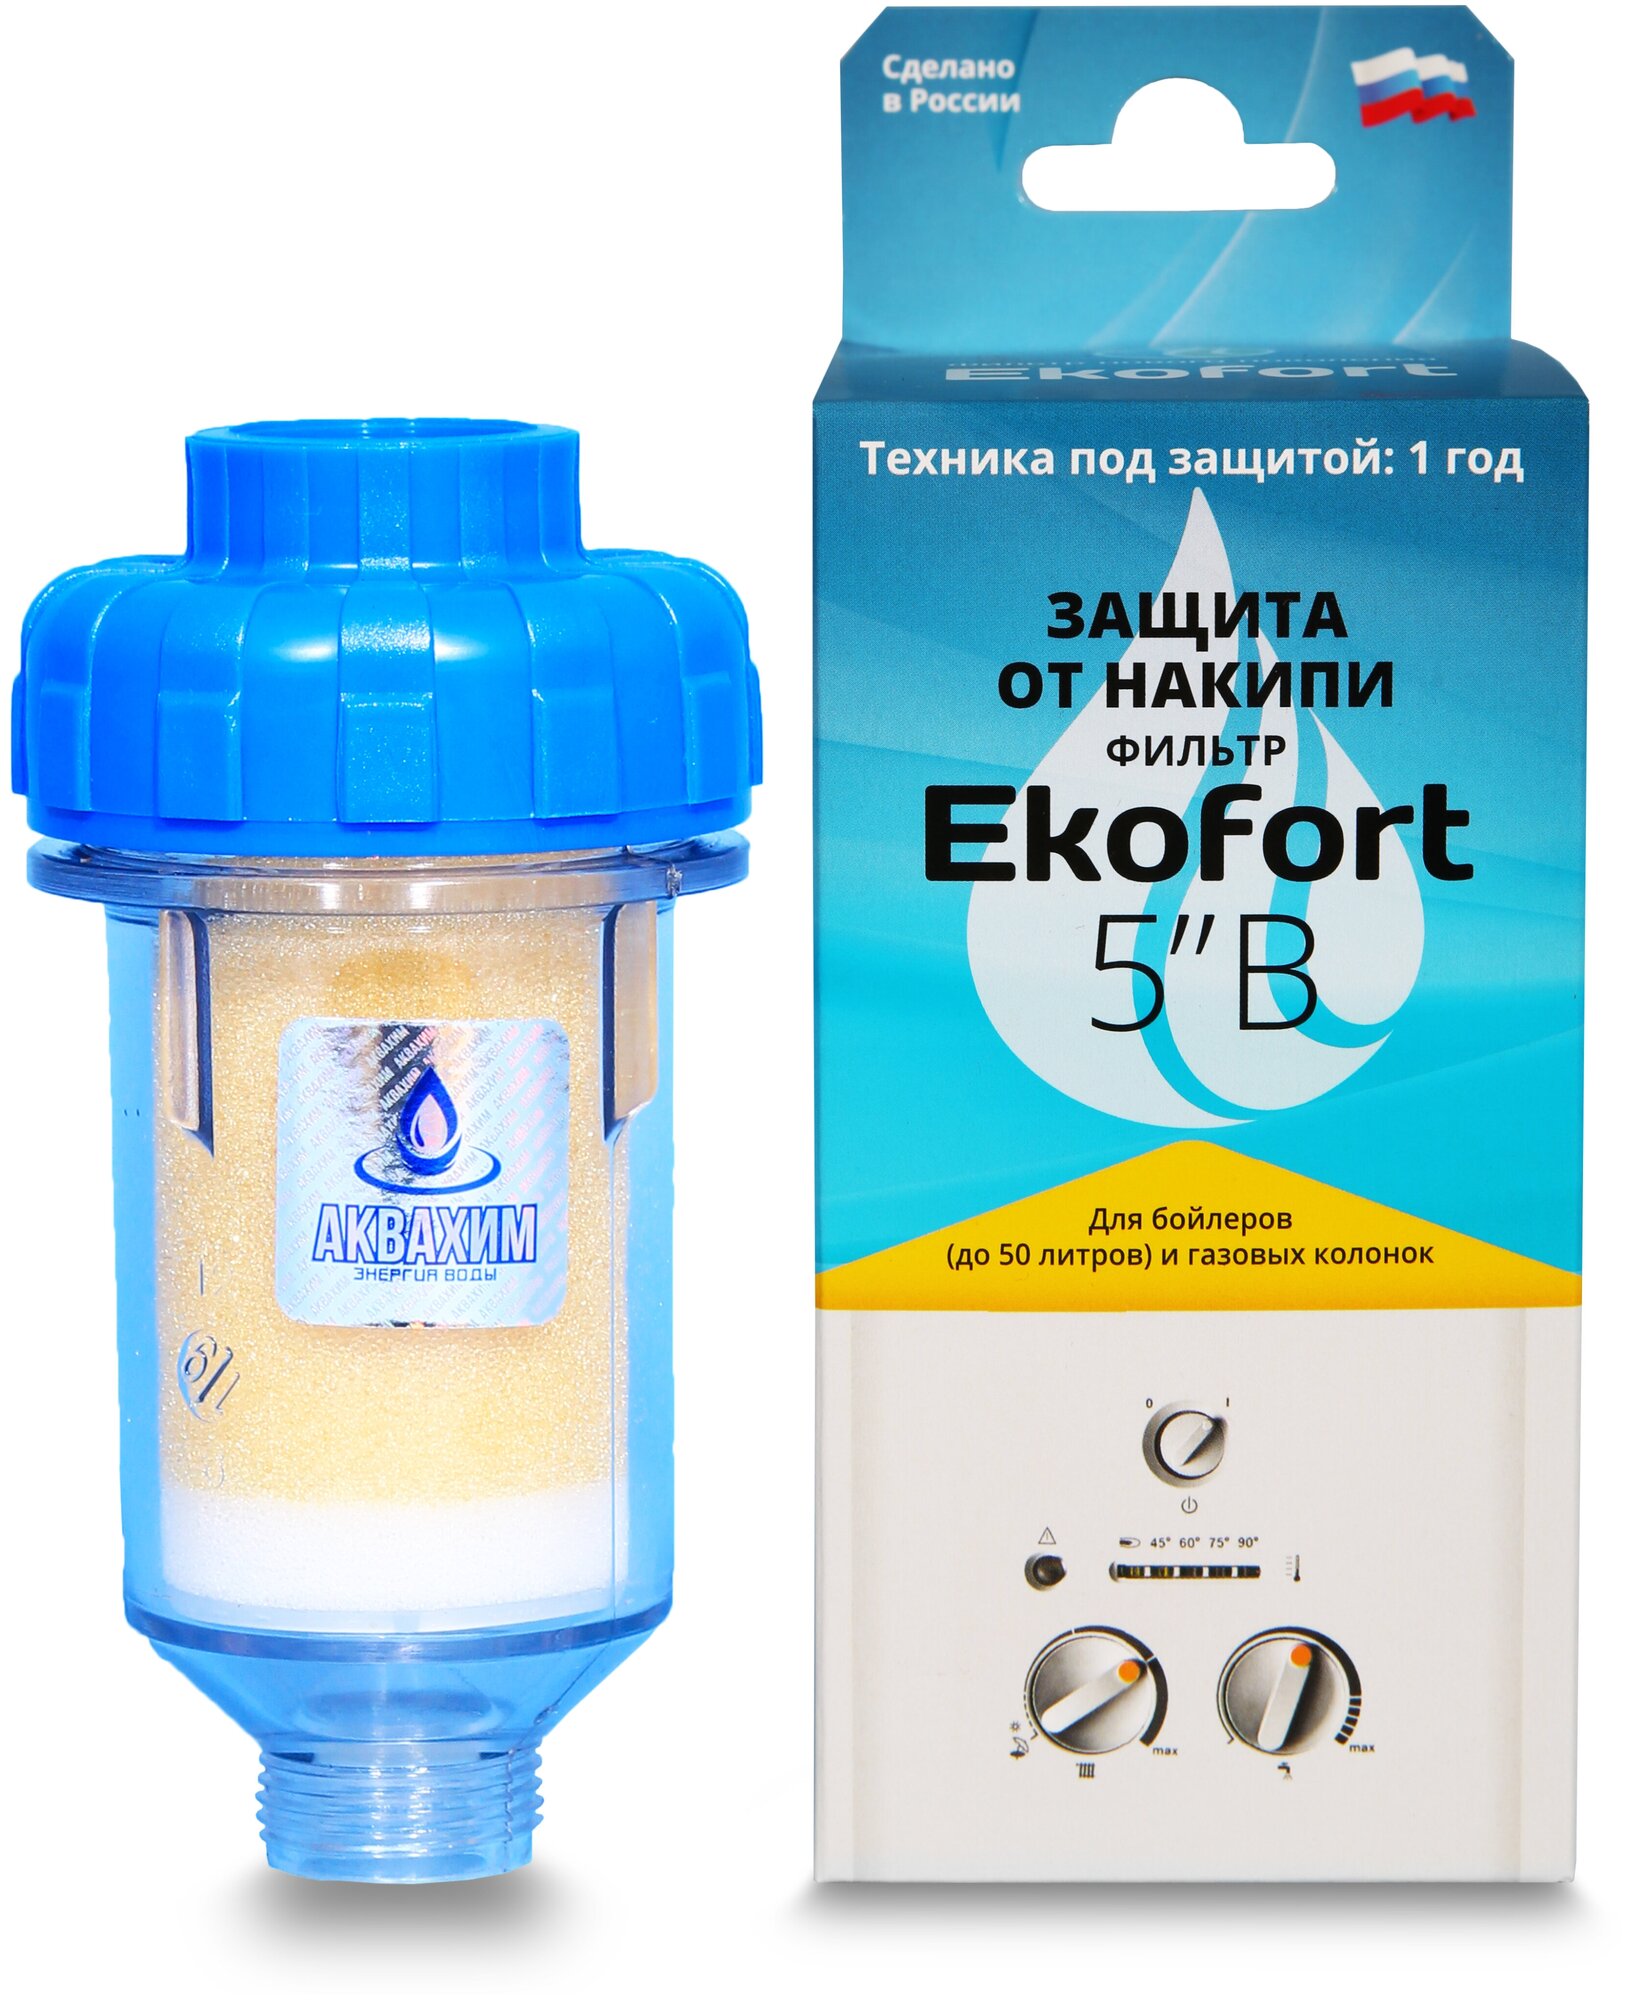 Фильтр Ekofort 5" B (3/4") для защиты от накипи газовых и электрических водонагревателей, бойлеров - фотография № 1